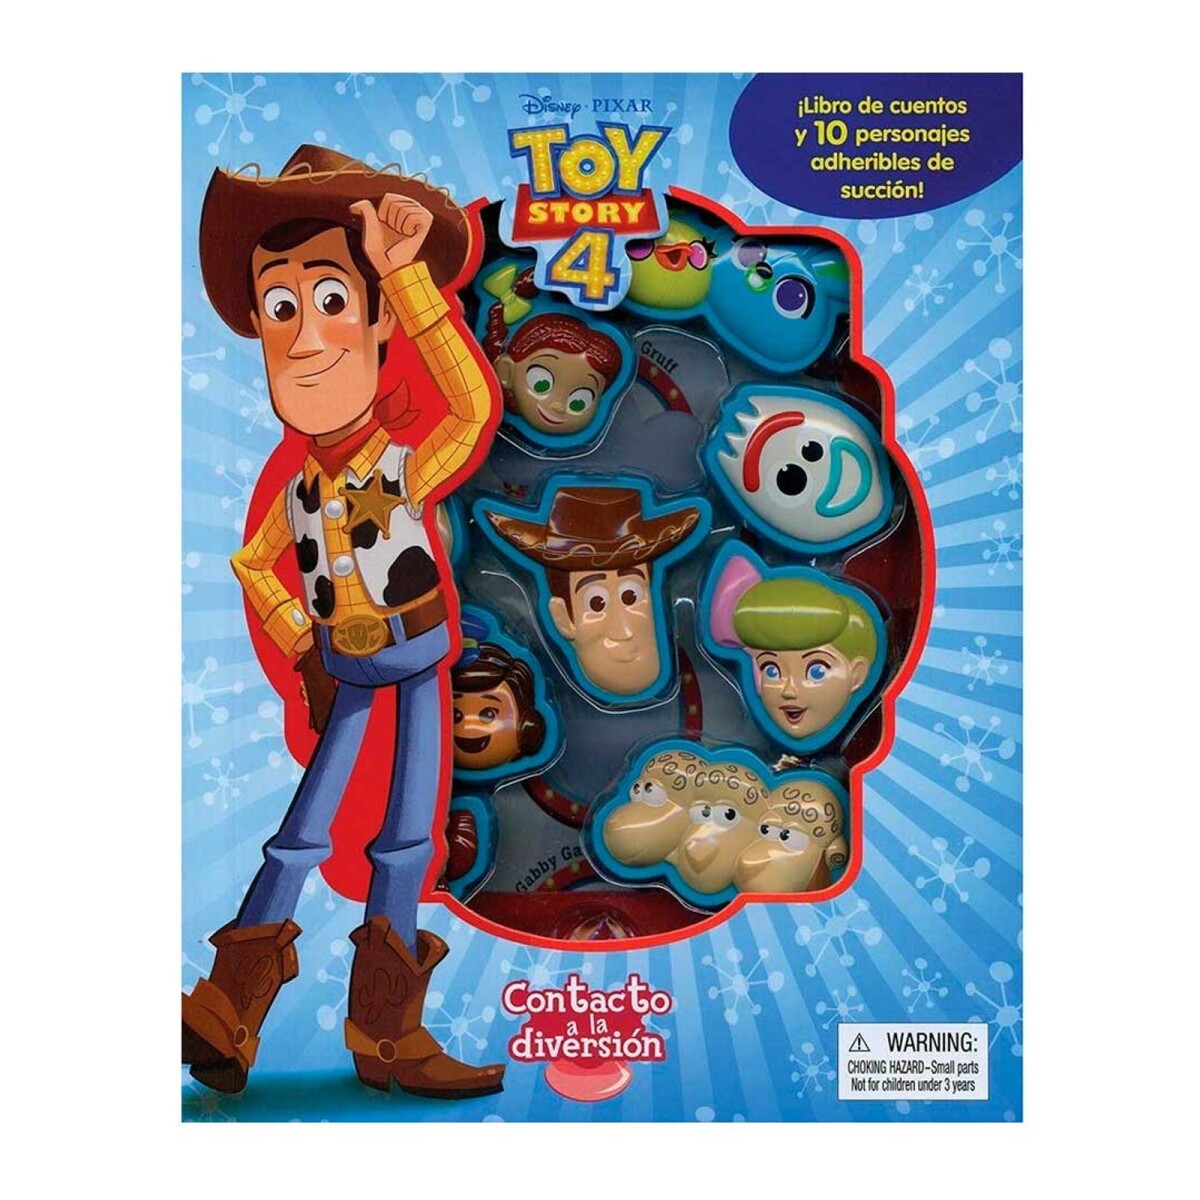 Libro de cuentos Toy Story con 10 personajes adheribles - 001 